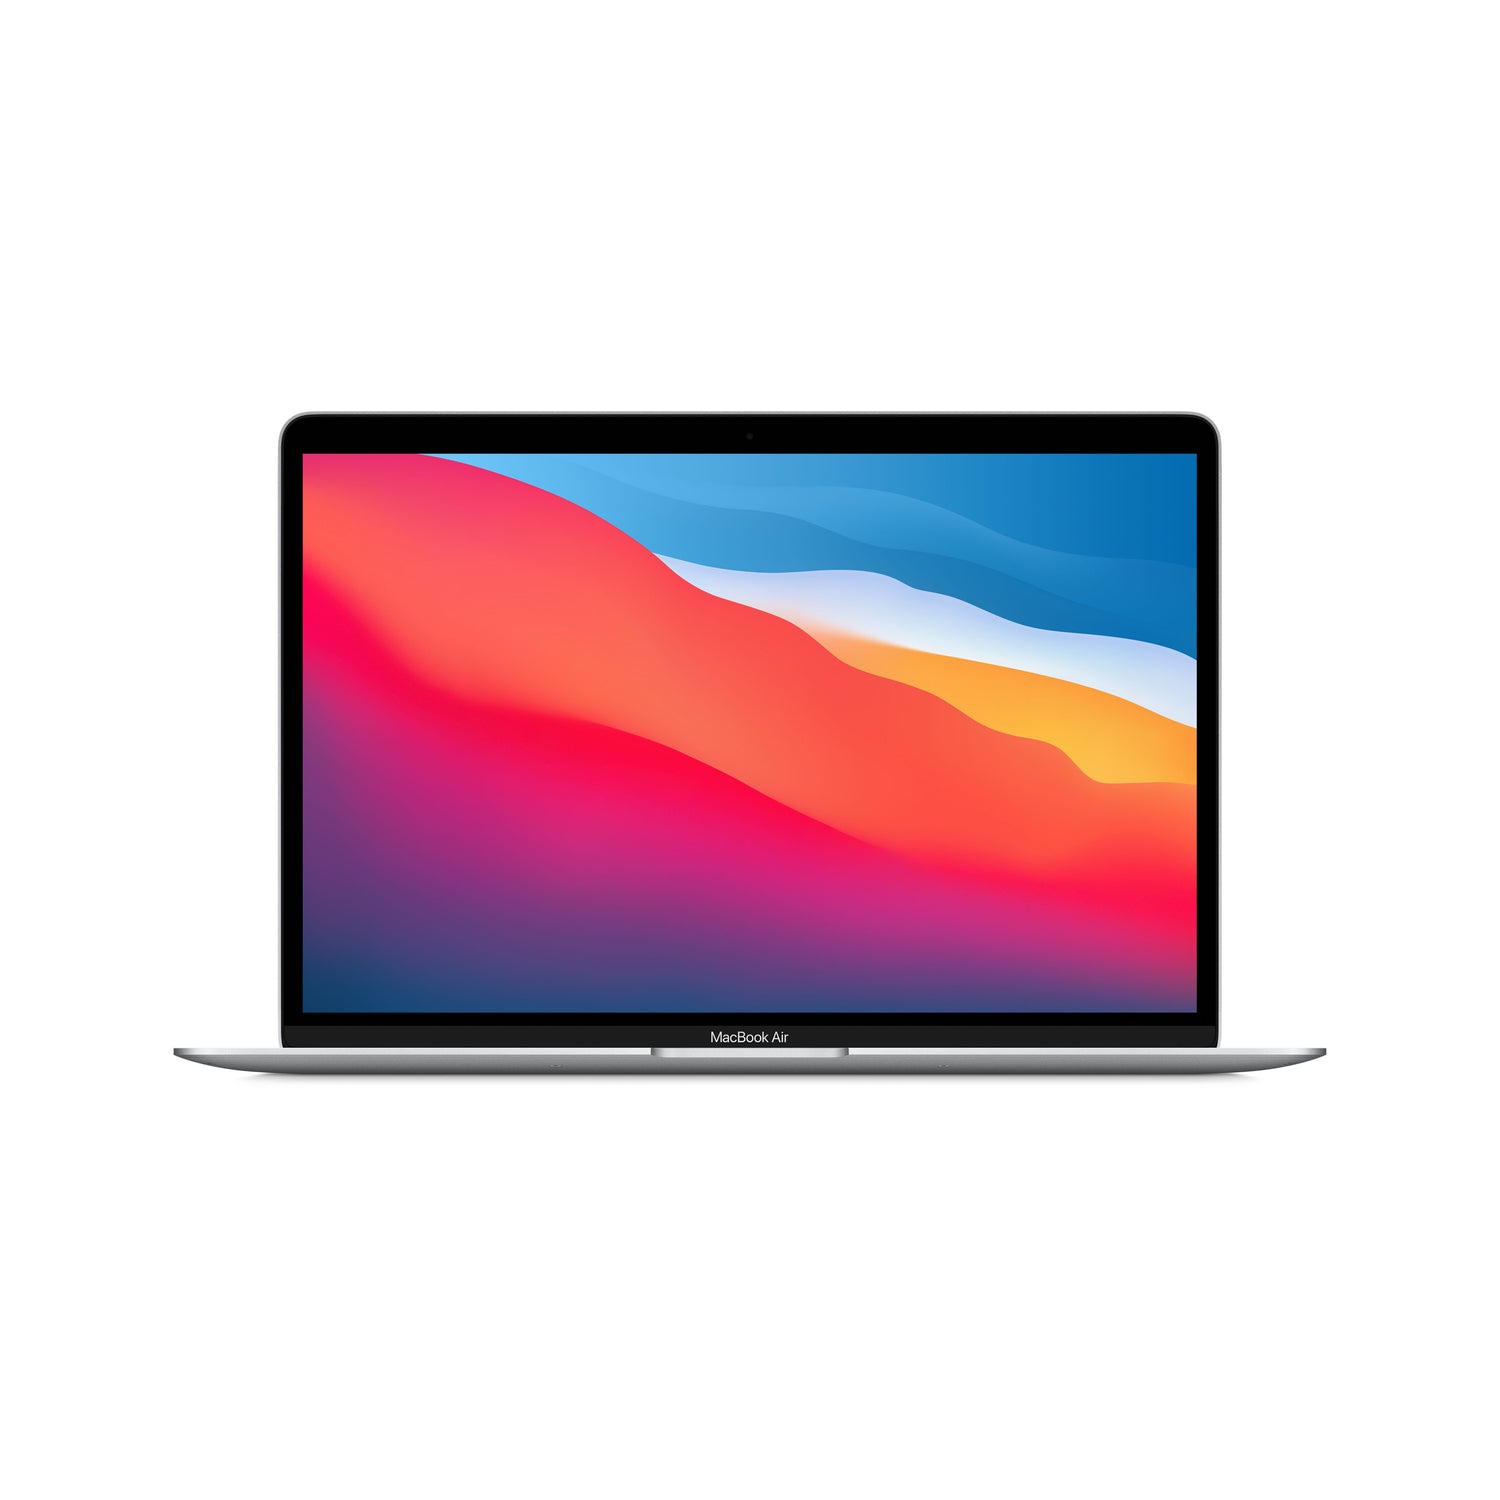 EOL MacBook Air 13 pouces: Puce Apple M1 avec CPU 8 cœurs et GPU 7 cœurs, 8 Go, 256 Go - Argent (Azerty FR)